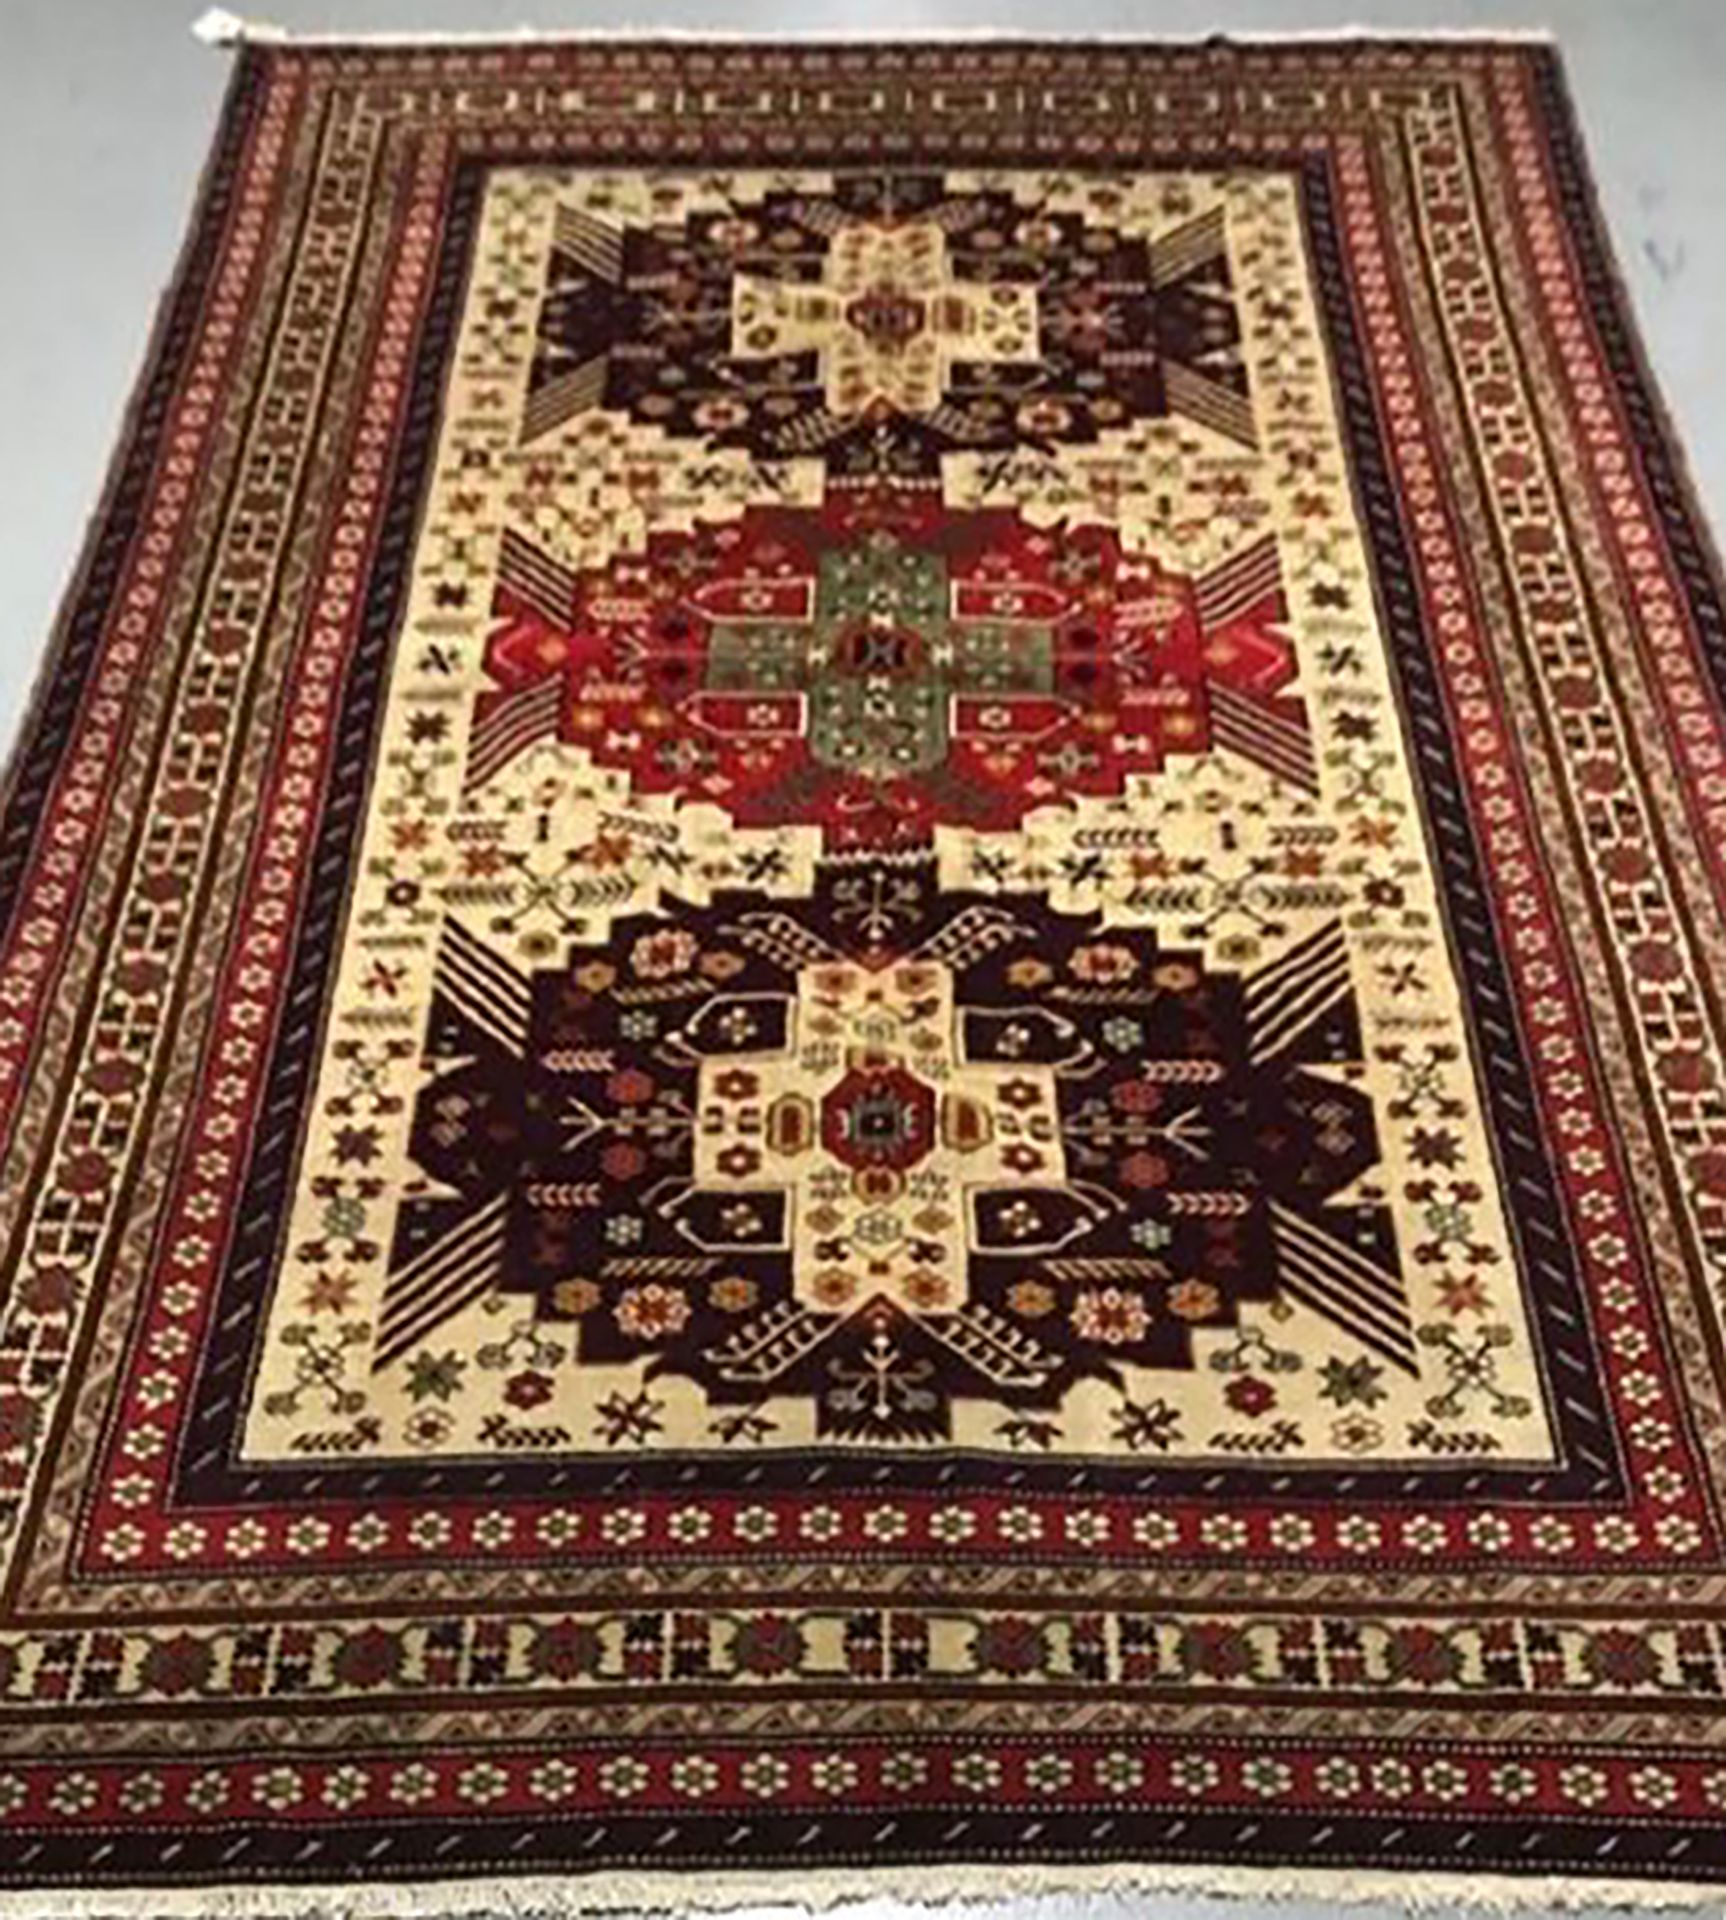 Null 原创和大型的达吉斯坦 - 俄罗斯 - 阿塞拜疆

约1975年

尺寸：275 x 195 cm

技术特点

棉质底座上的羊毛丝绒

总体状况良好
&hellip;